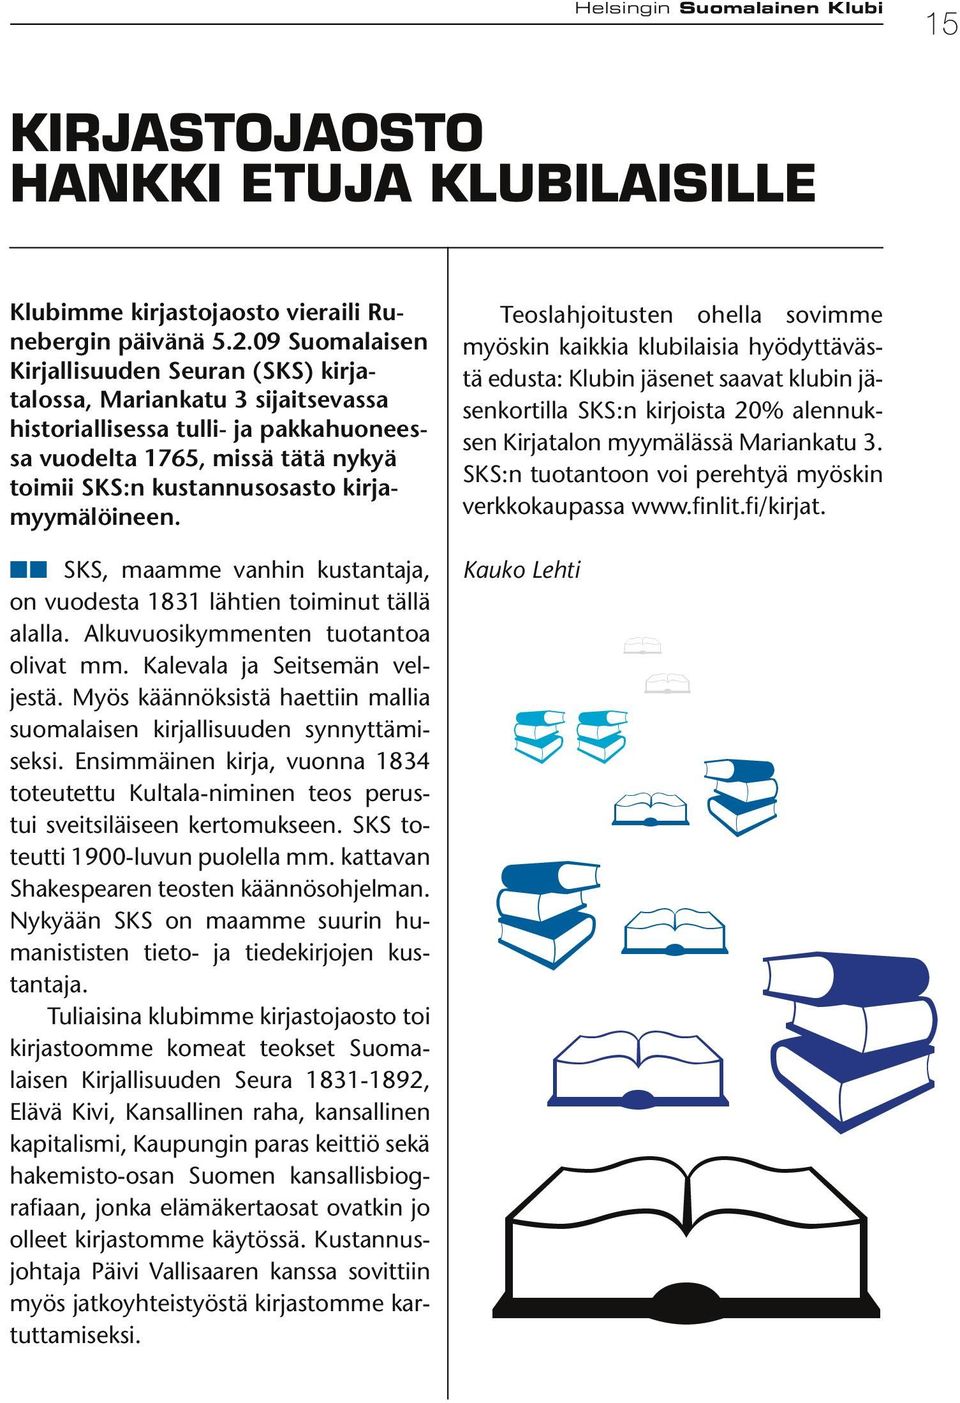 kirjamyymälöineen. nn SKS, maamme vanhin kustantaja, on vuodesta 1831 lähtien toiminut tällä alalla. Alkuvuosikymmenten tuotantoa olivat mm. Kalevala ja Seitsemän veljestä.